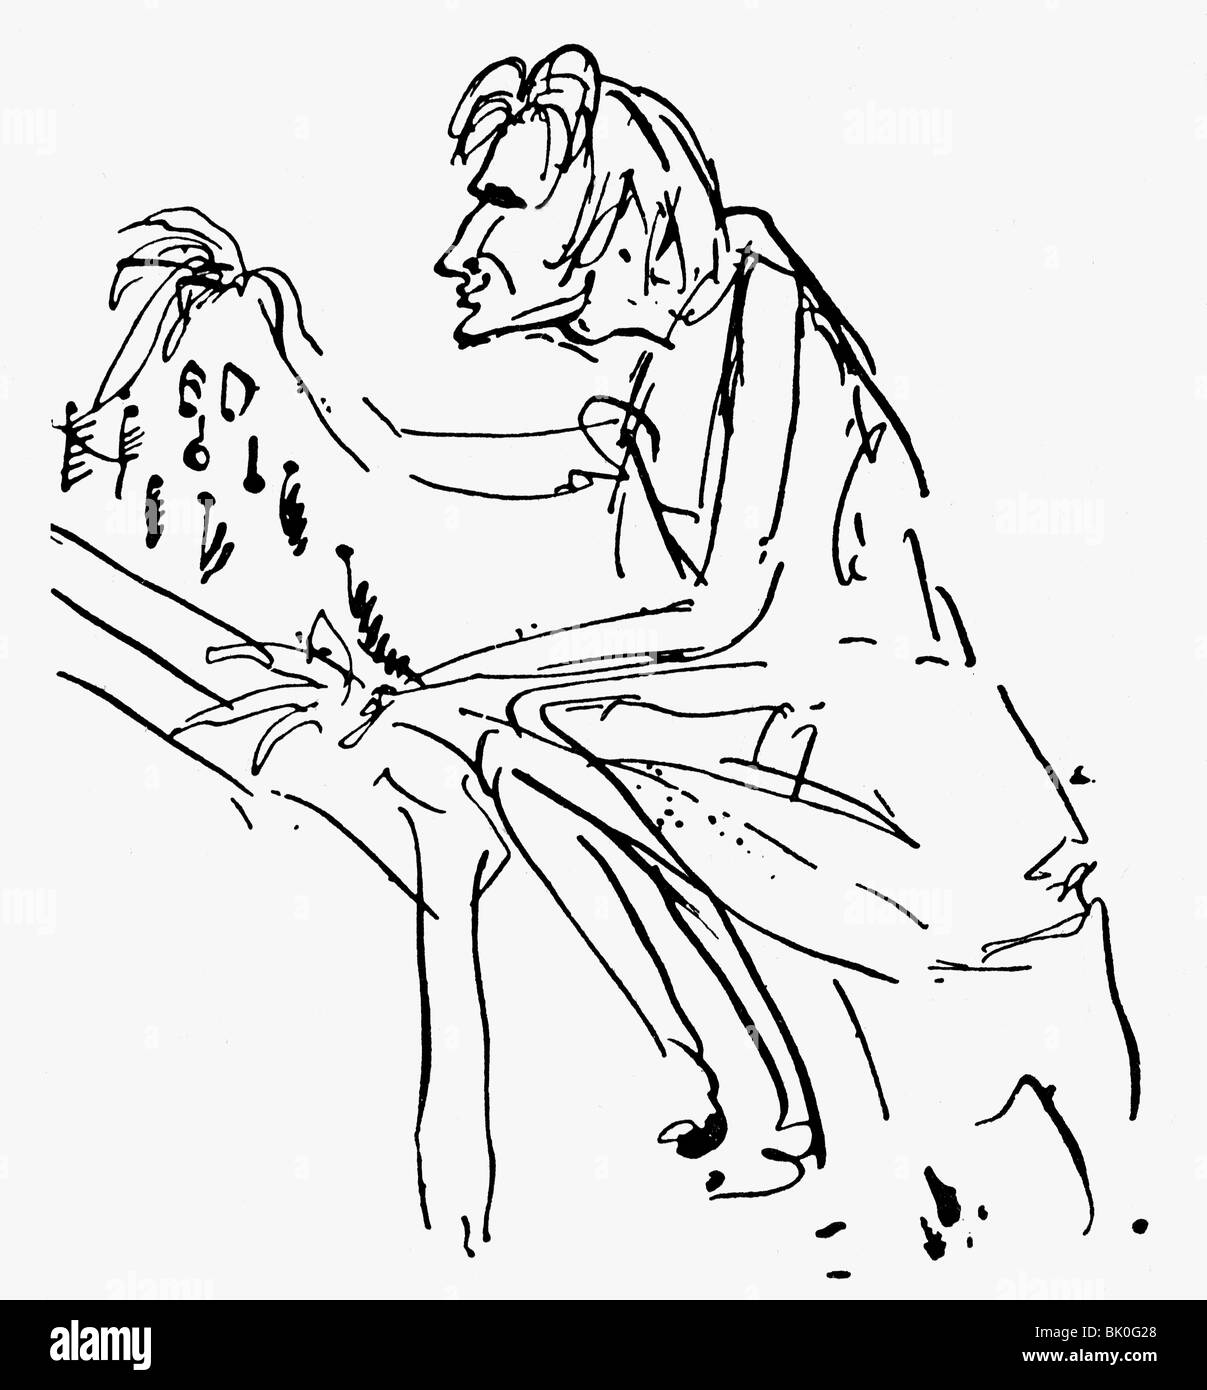 Liszt, Franz, 22.10.1811 - 31.7.1886, compositeur et pianiste hongrois, caricature, au piano, dessin de Maurice Sand, vers 1865, Banque D'Images